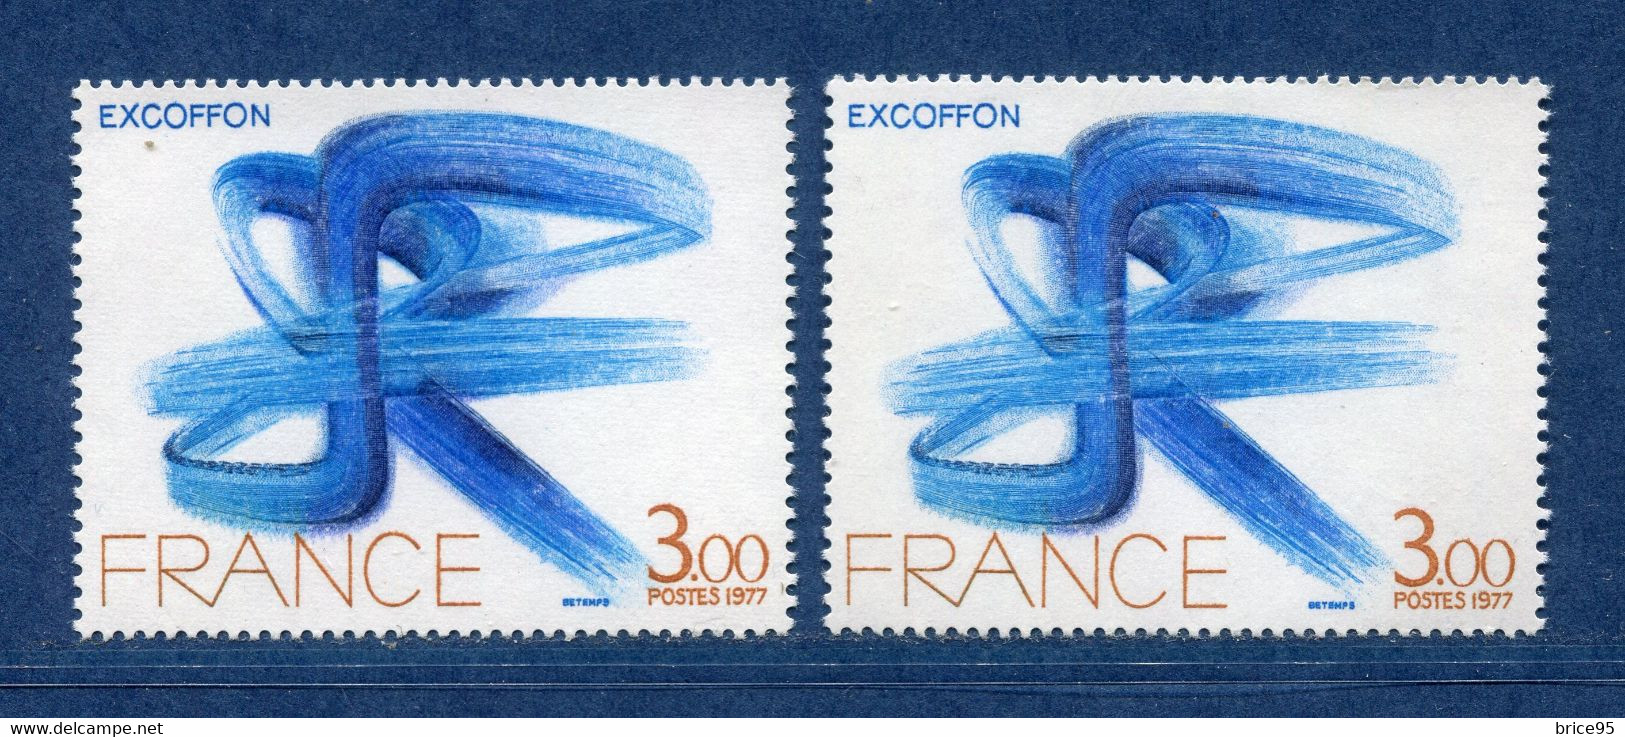 ⭐ France - Variété - YT N° 1951 - Couleurs - Pétouilles - Neuf Sans Charnière - 1977 ⭐ - Neufs